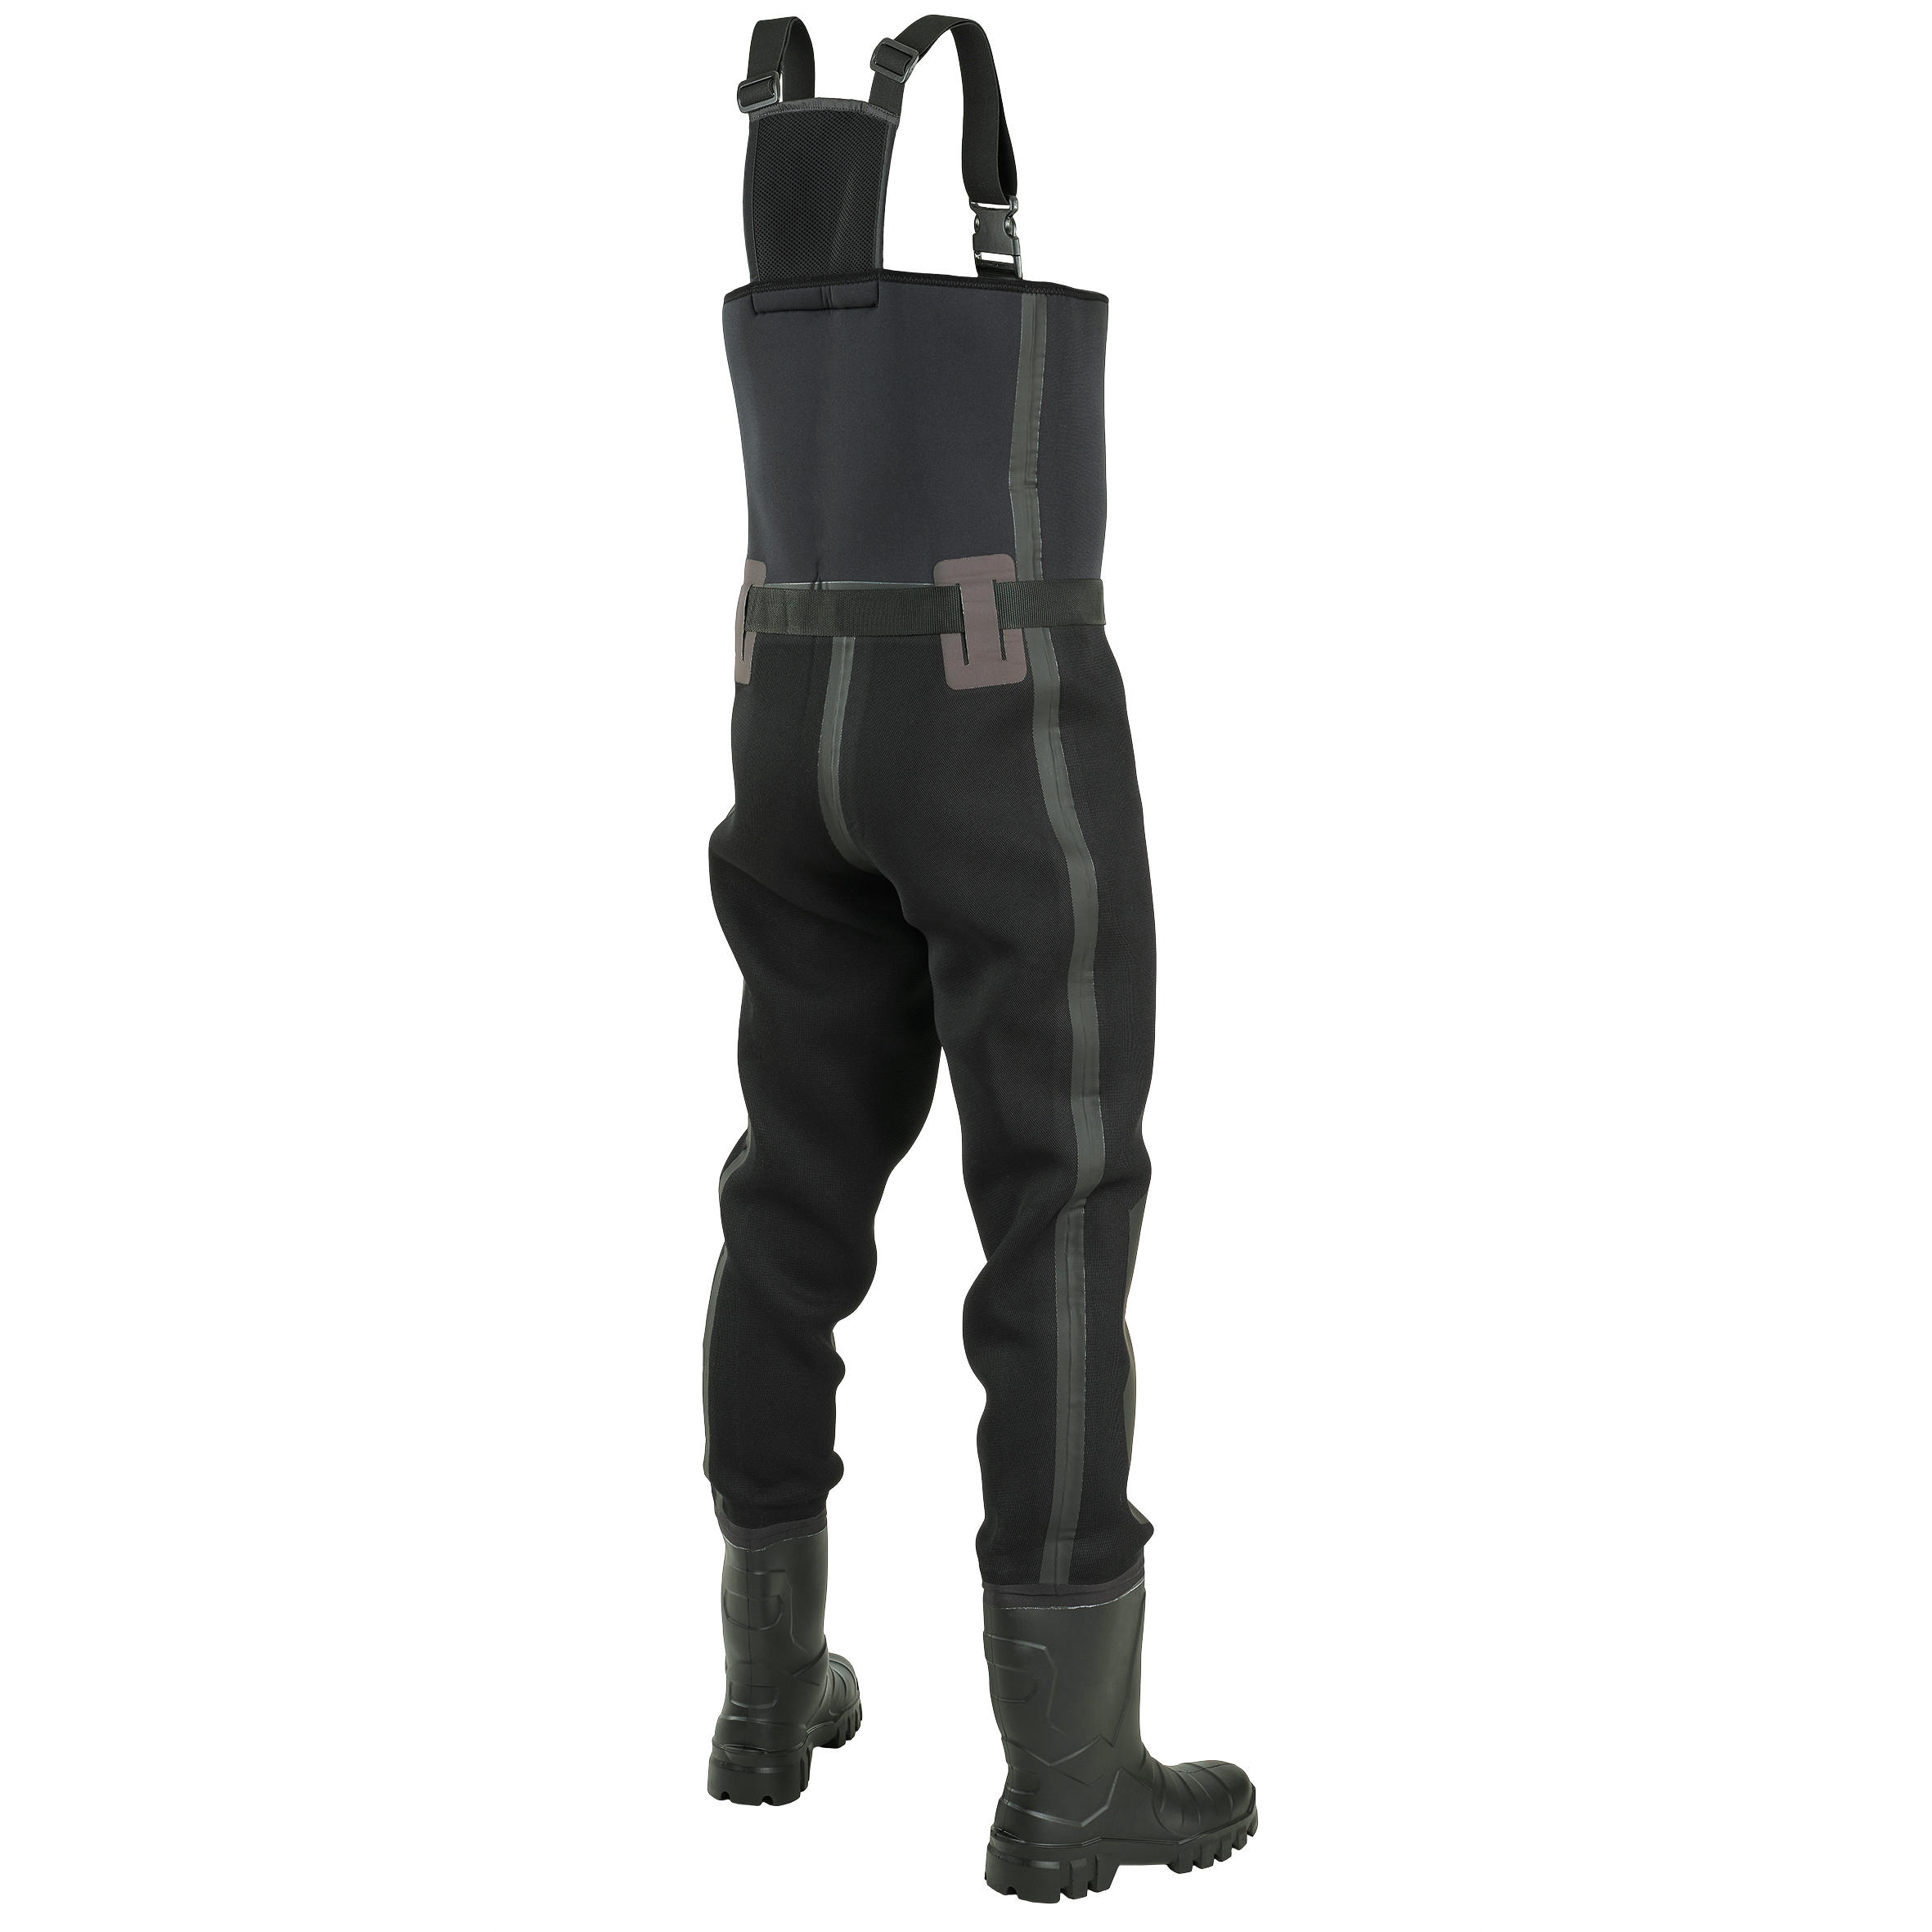 Bottes-pantalon de pêche néoprène 4 mm - 900 Thermo - CAPERLAN